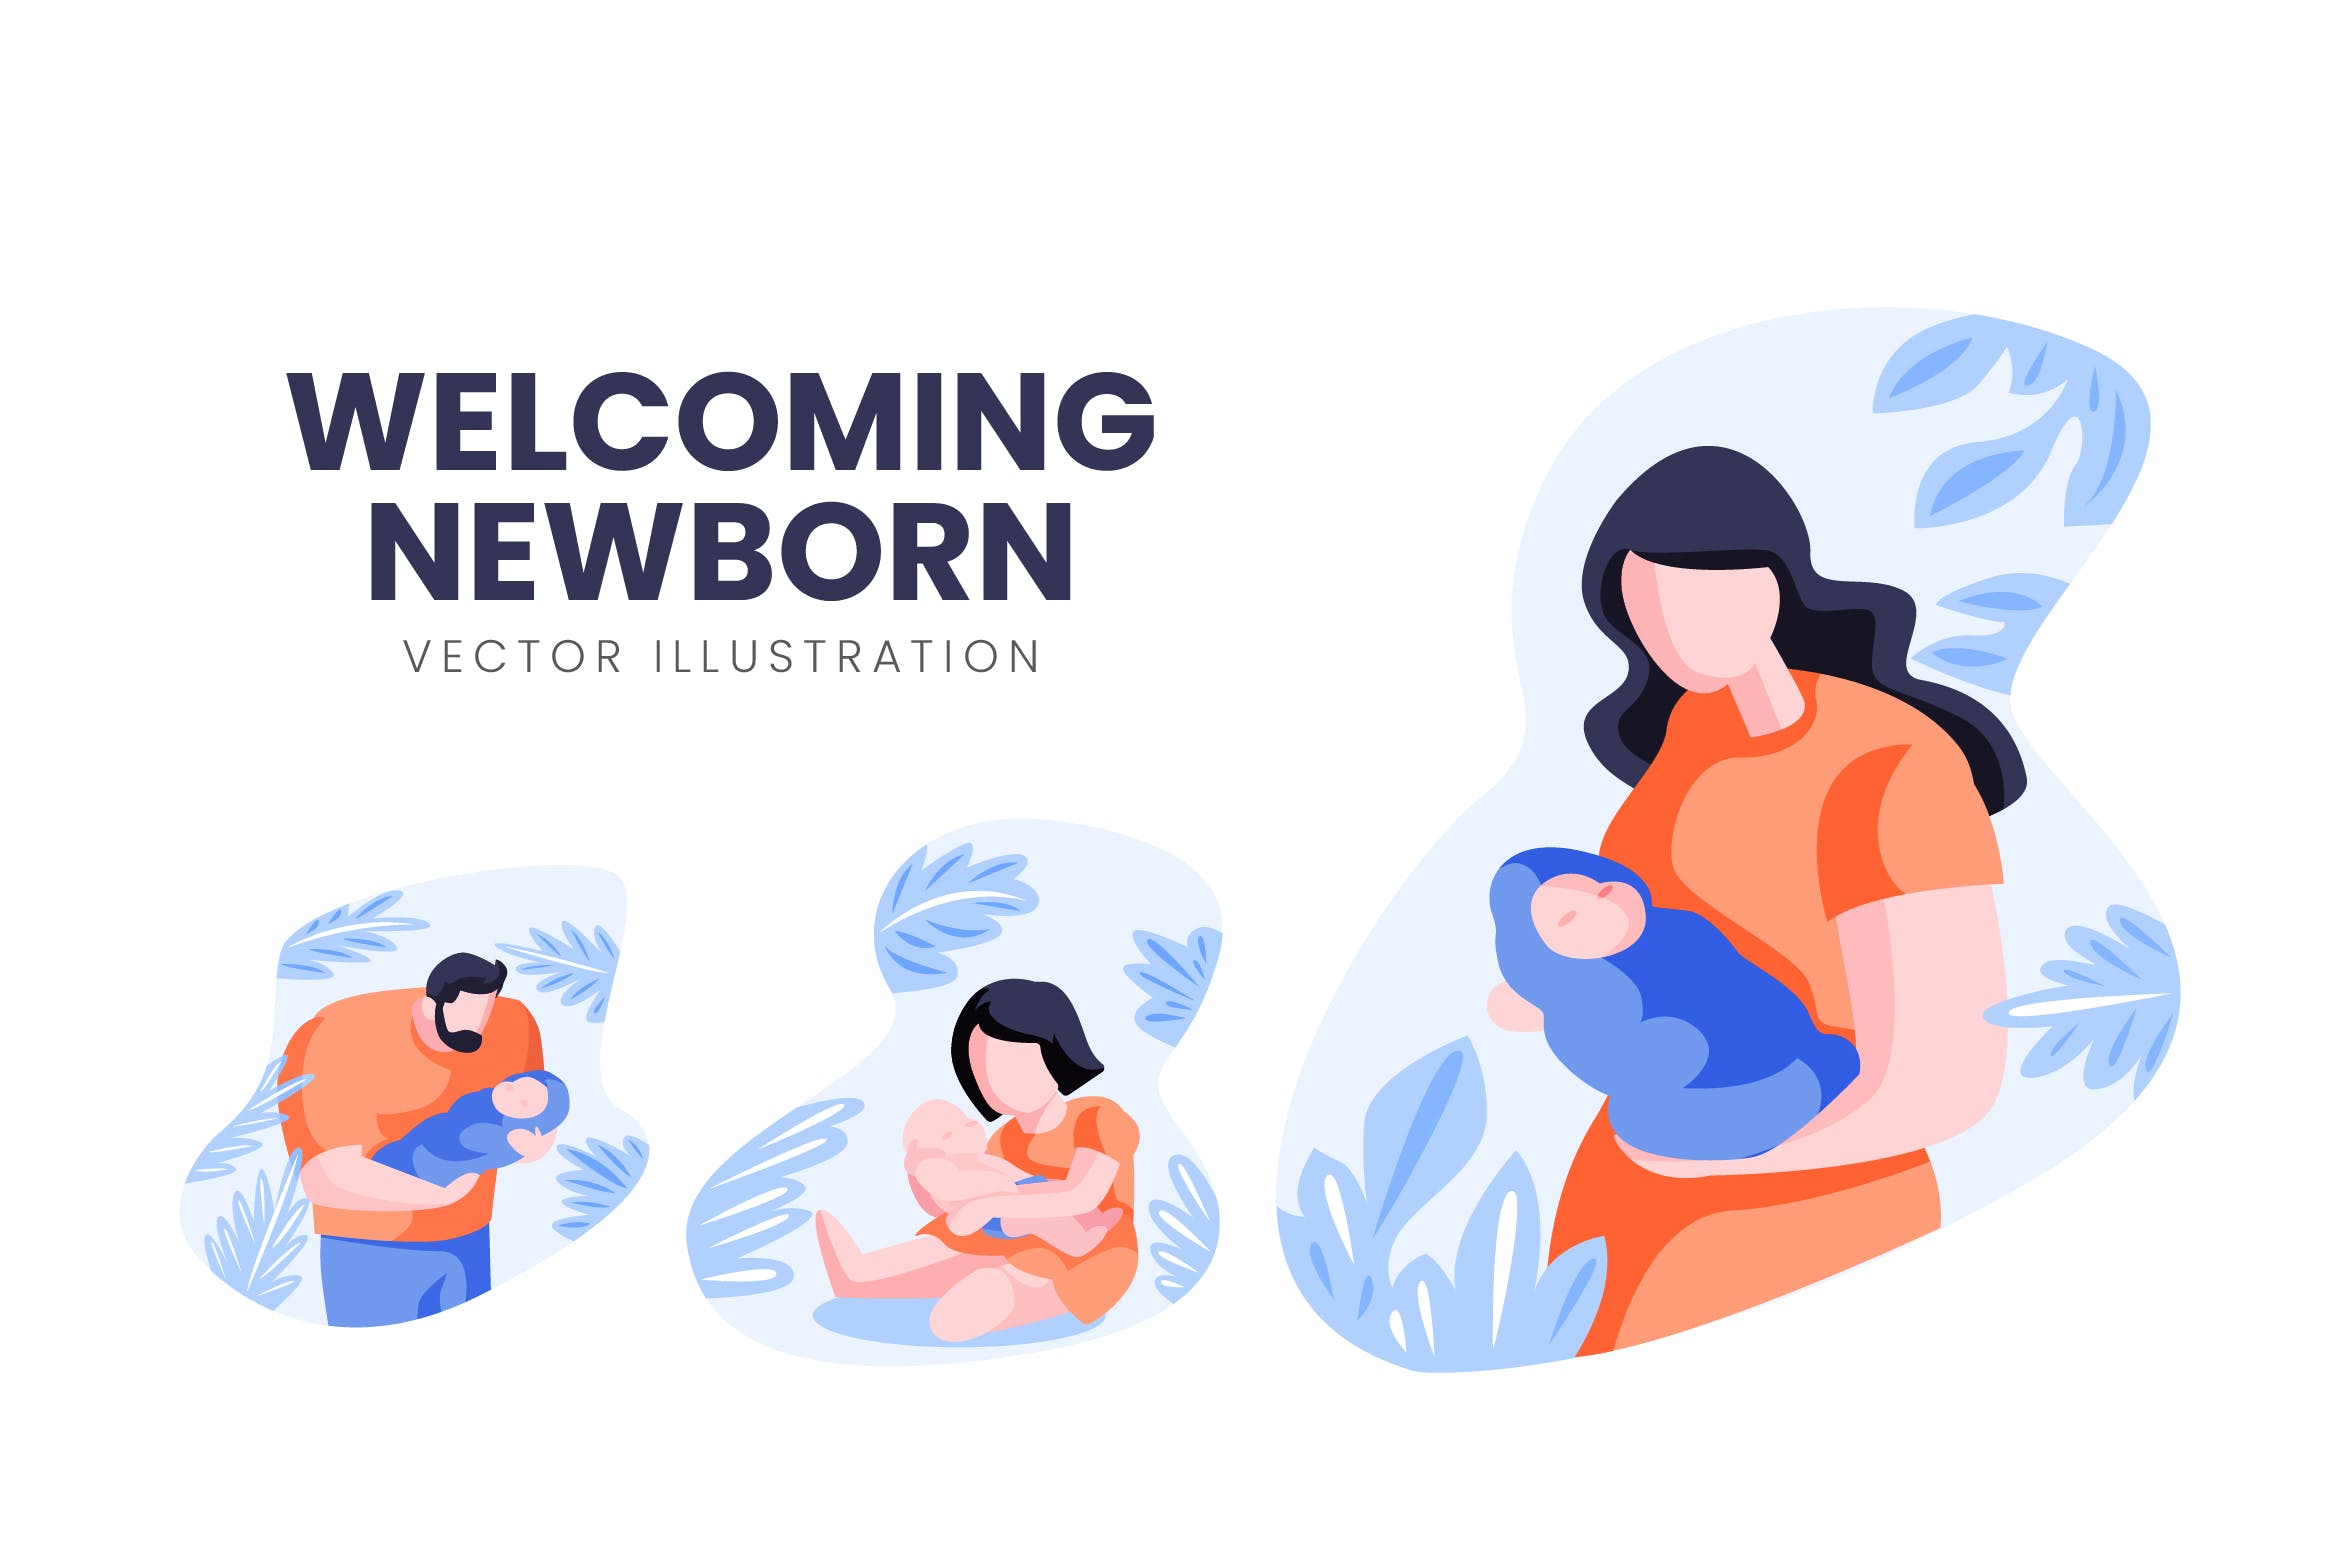 迎接降生新生儿人物形象16图库精选手绘插画矢量素材 Welcoming Newborn Vector Character Set插图